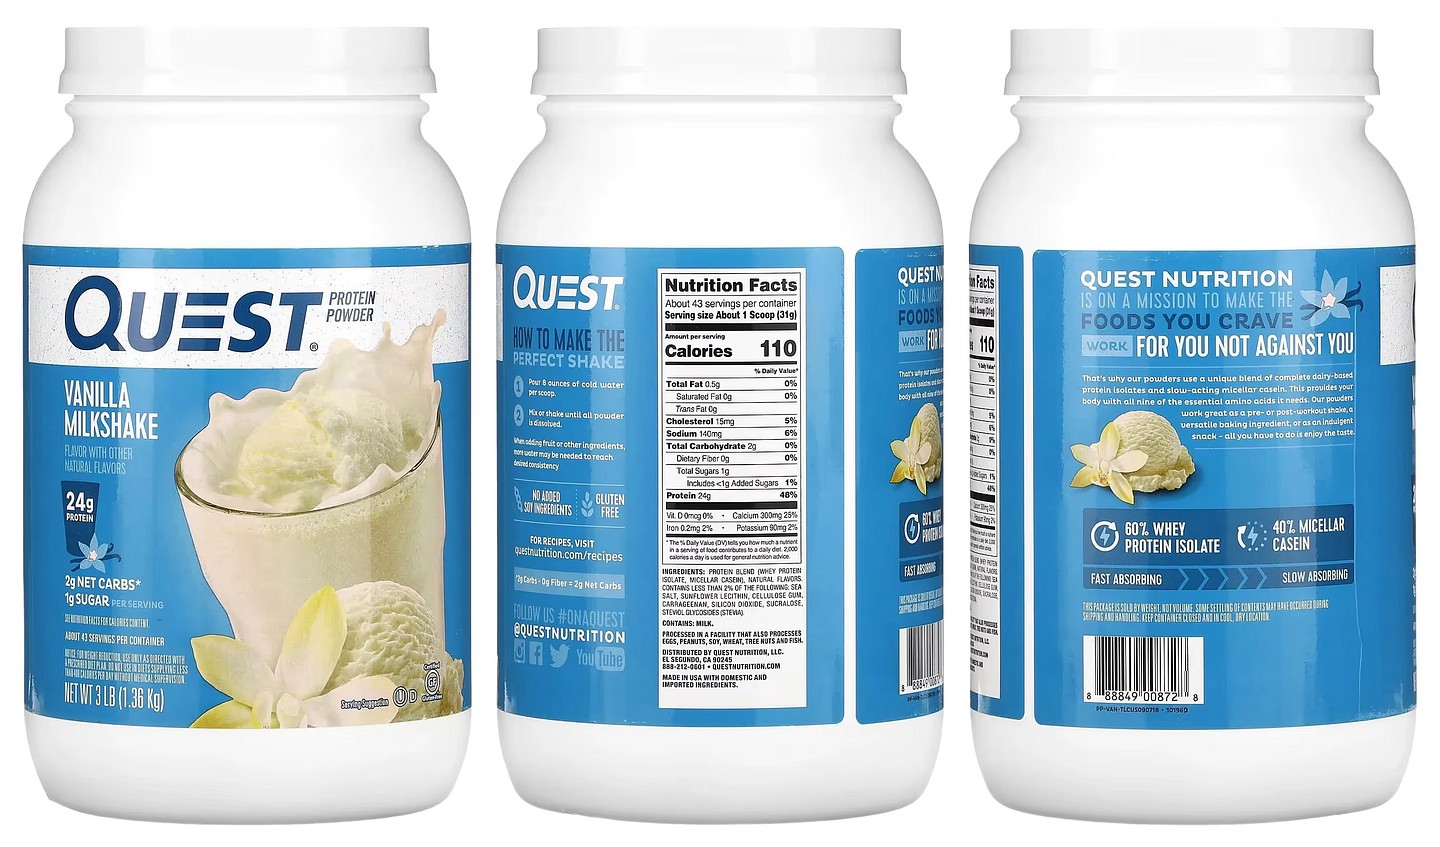 Quest Nutrition, Protein Powder, Vanilla Milkshake packaging